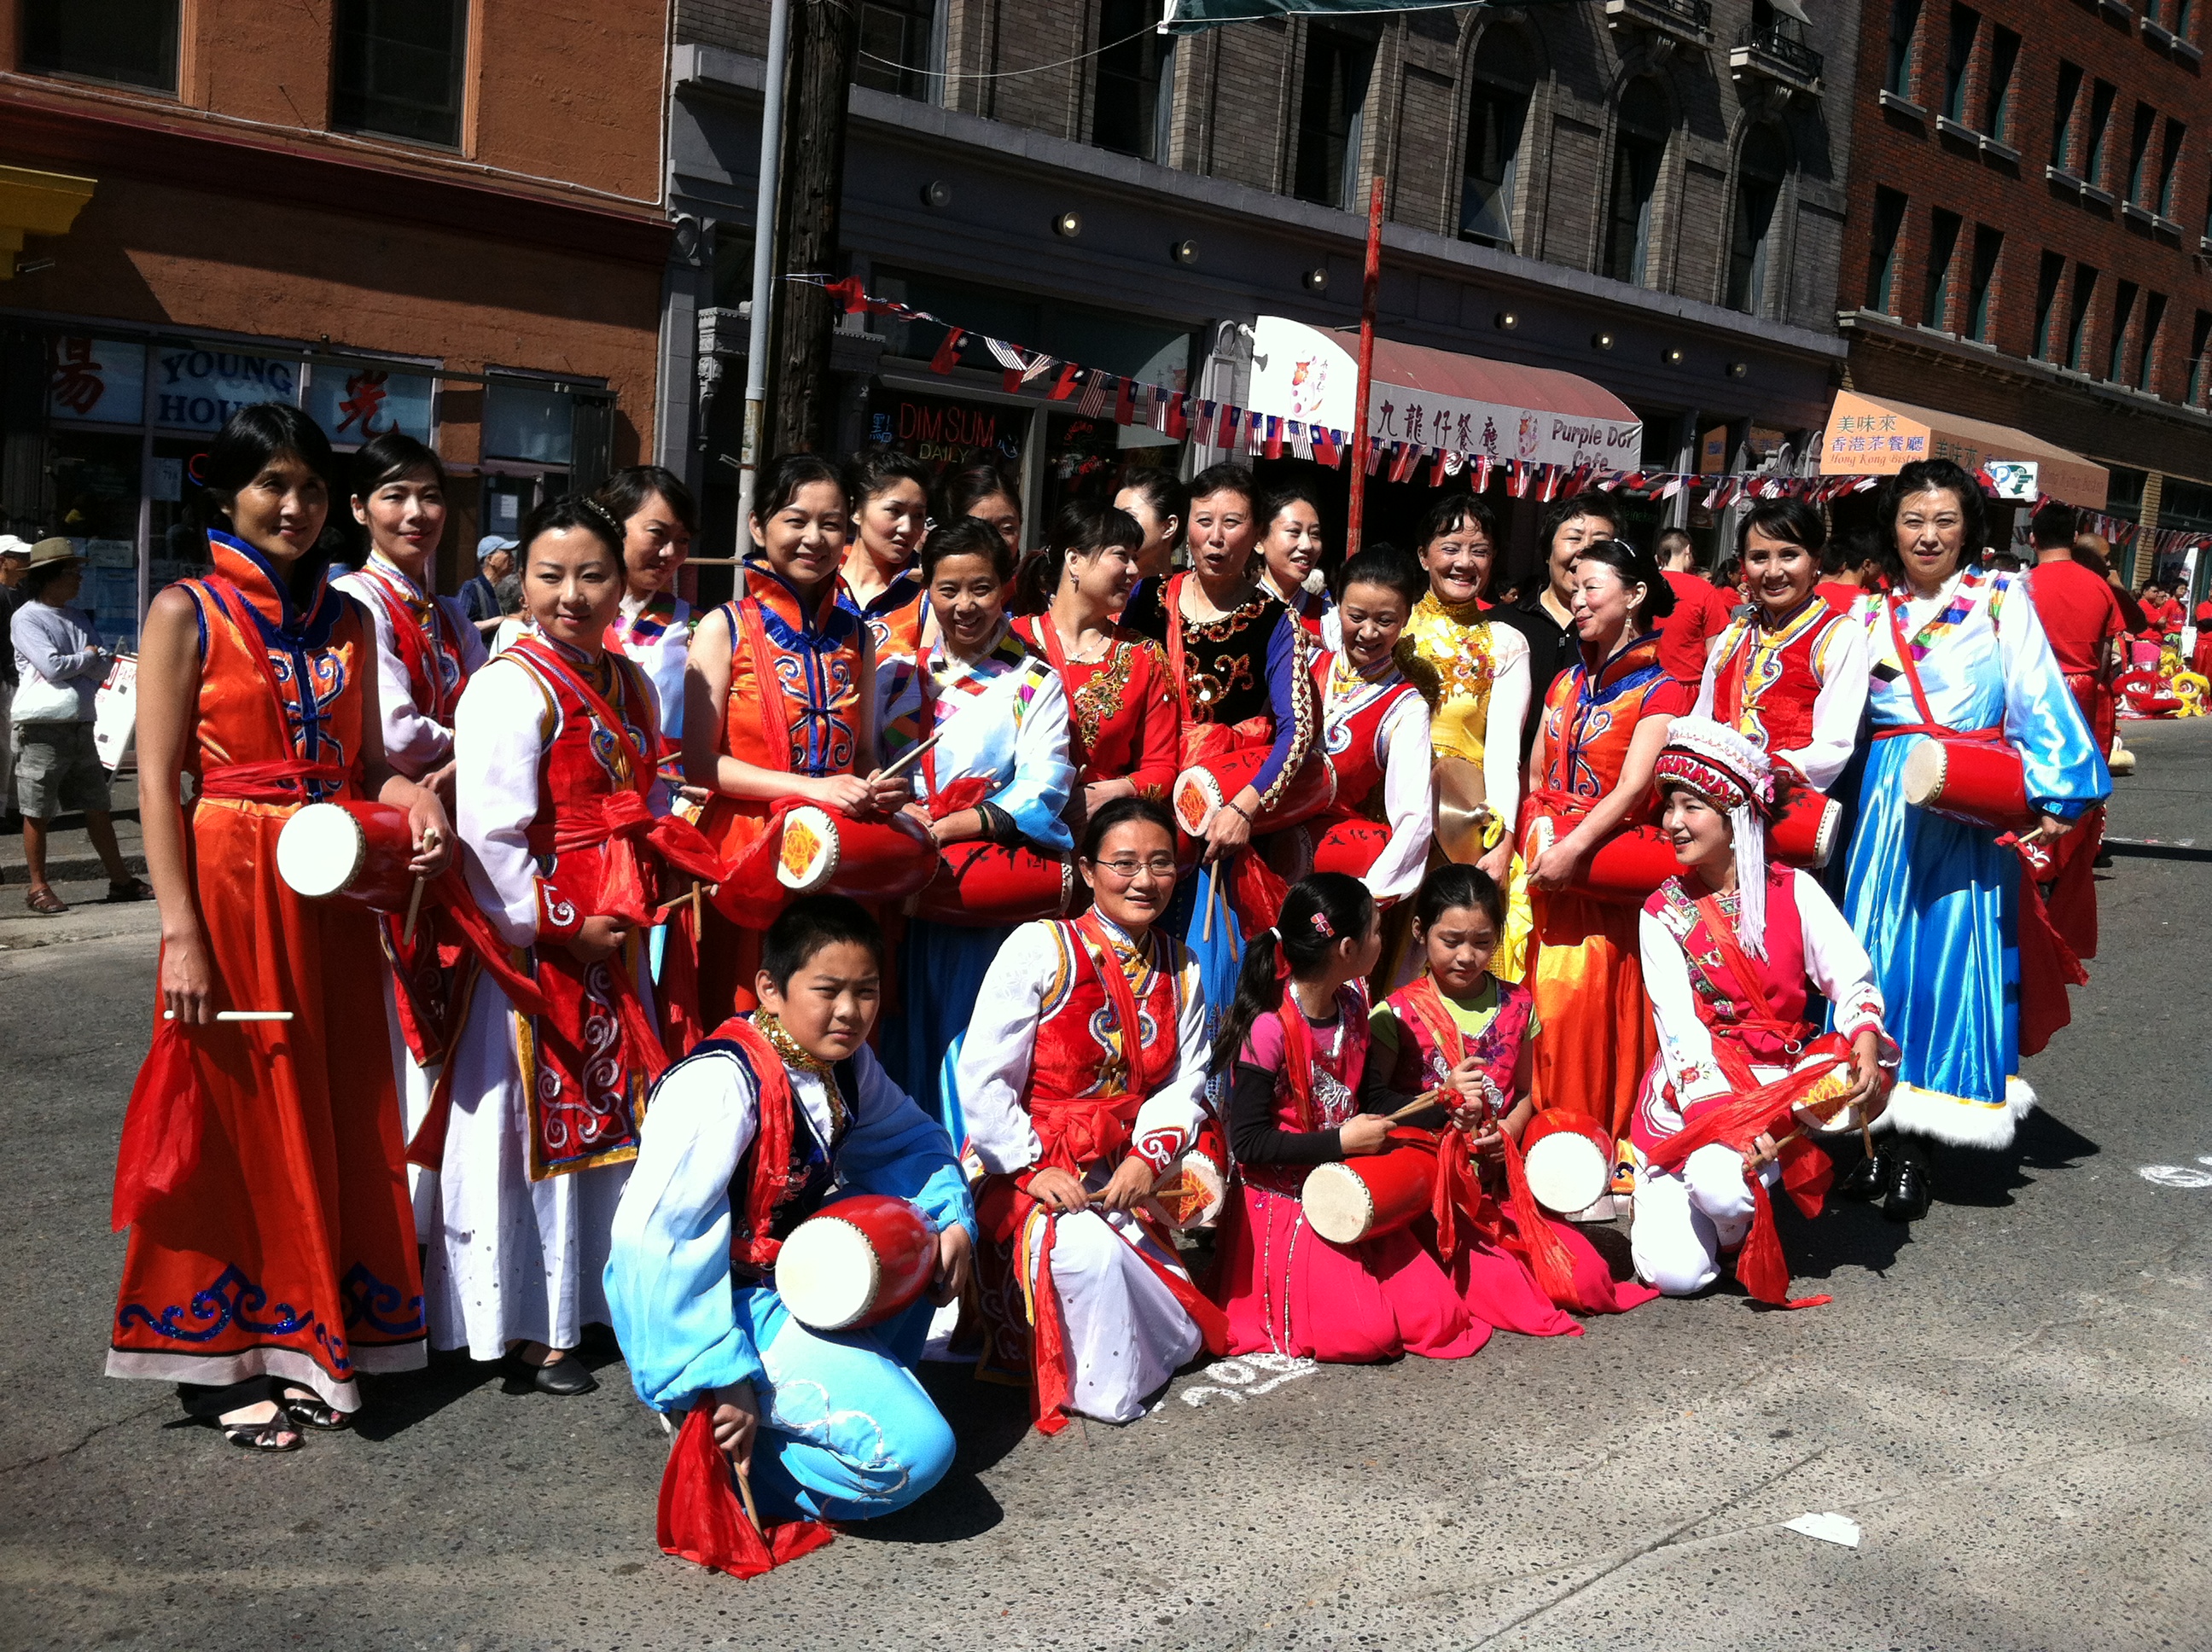 2012 Chinatown Seafair Parade Image 221